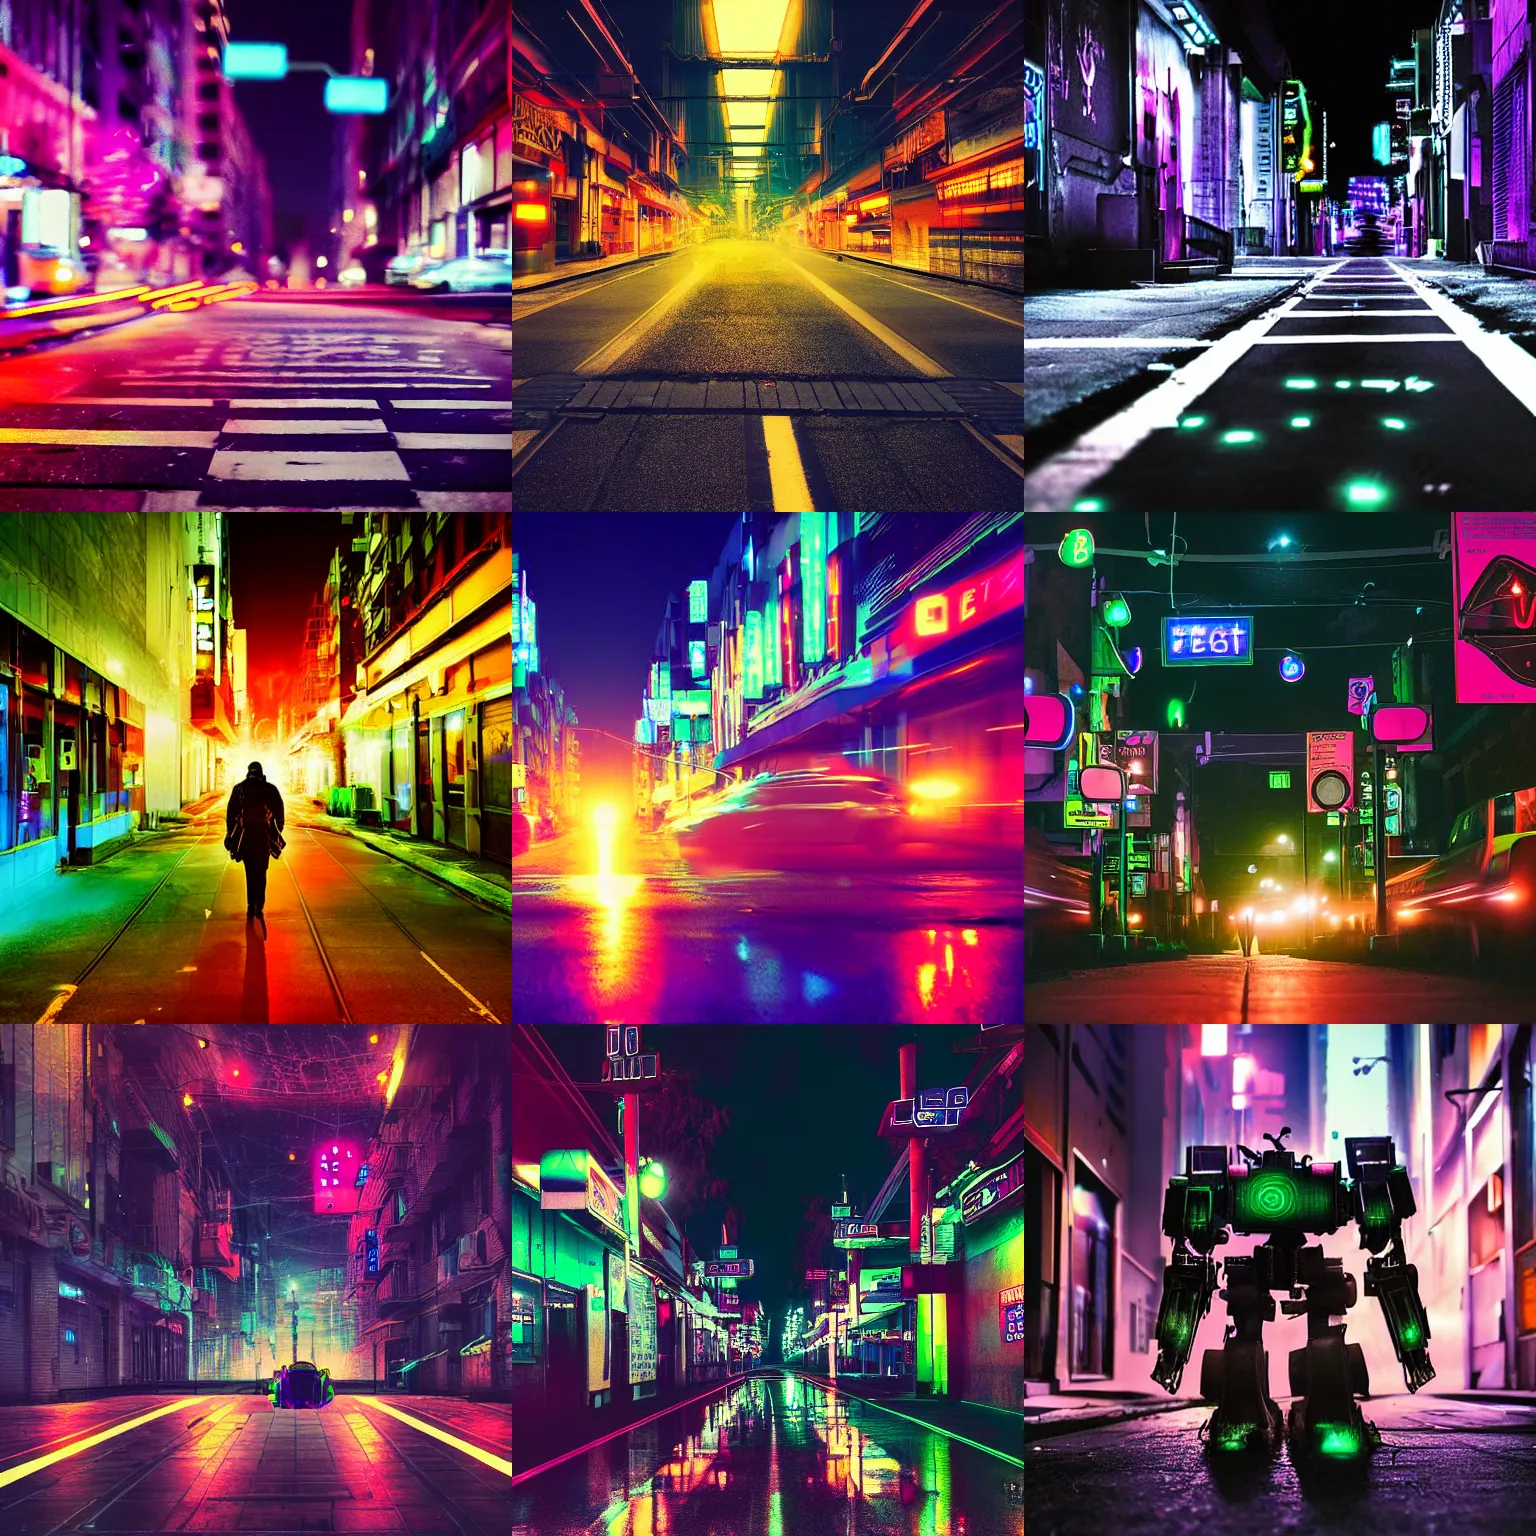 Prompt: battlemech walking down a city street, nighttime, neon lights, broken road, digital photograph, 3 2 megapixel